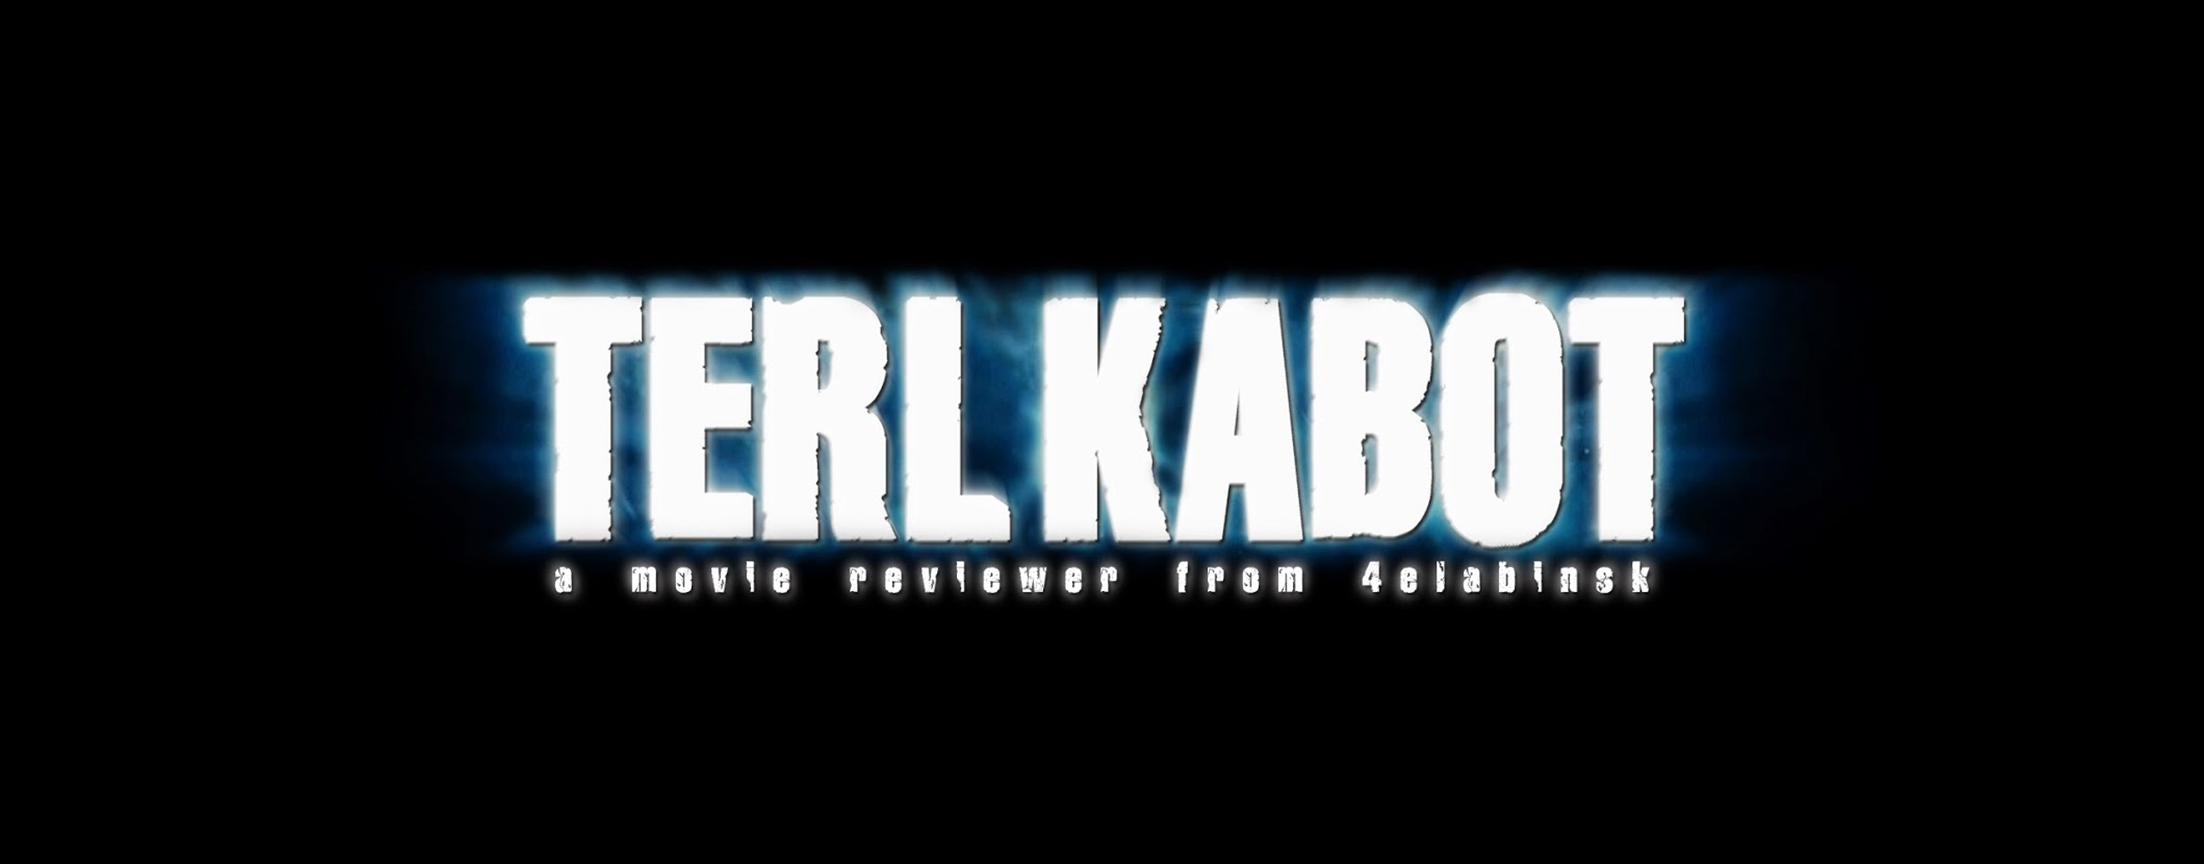 TerlKabot channel